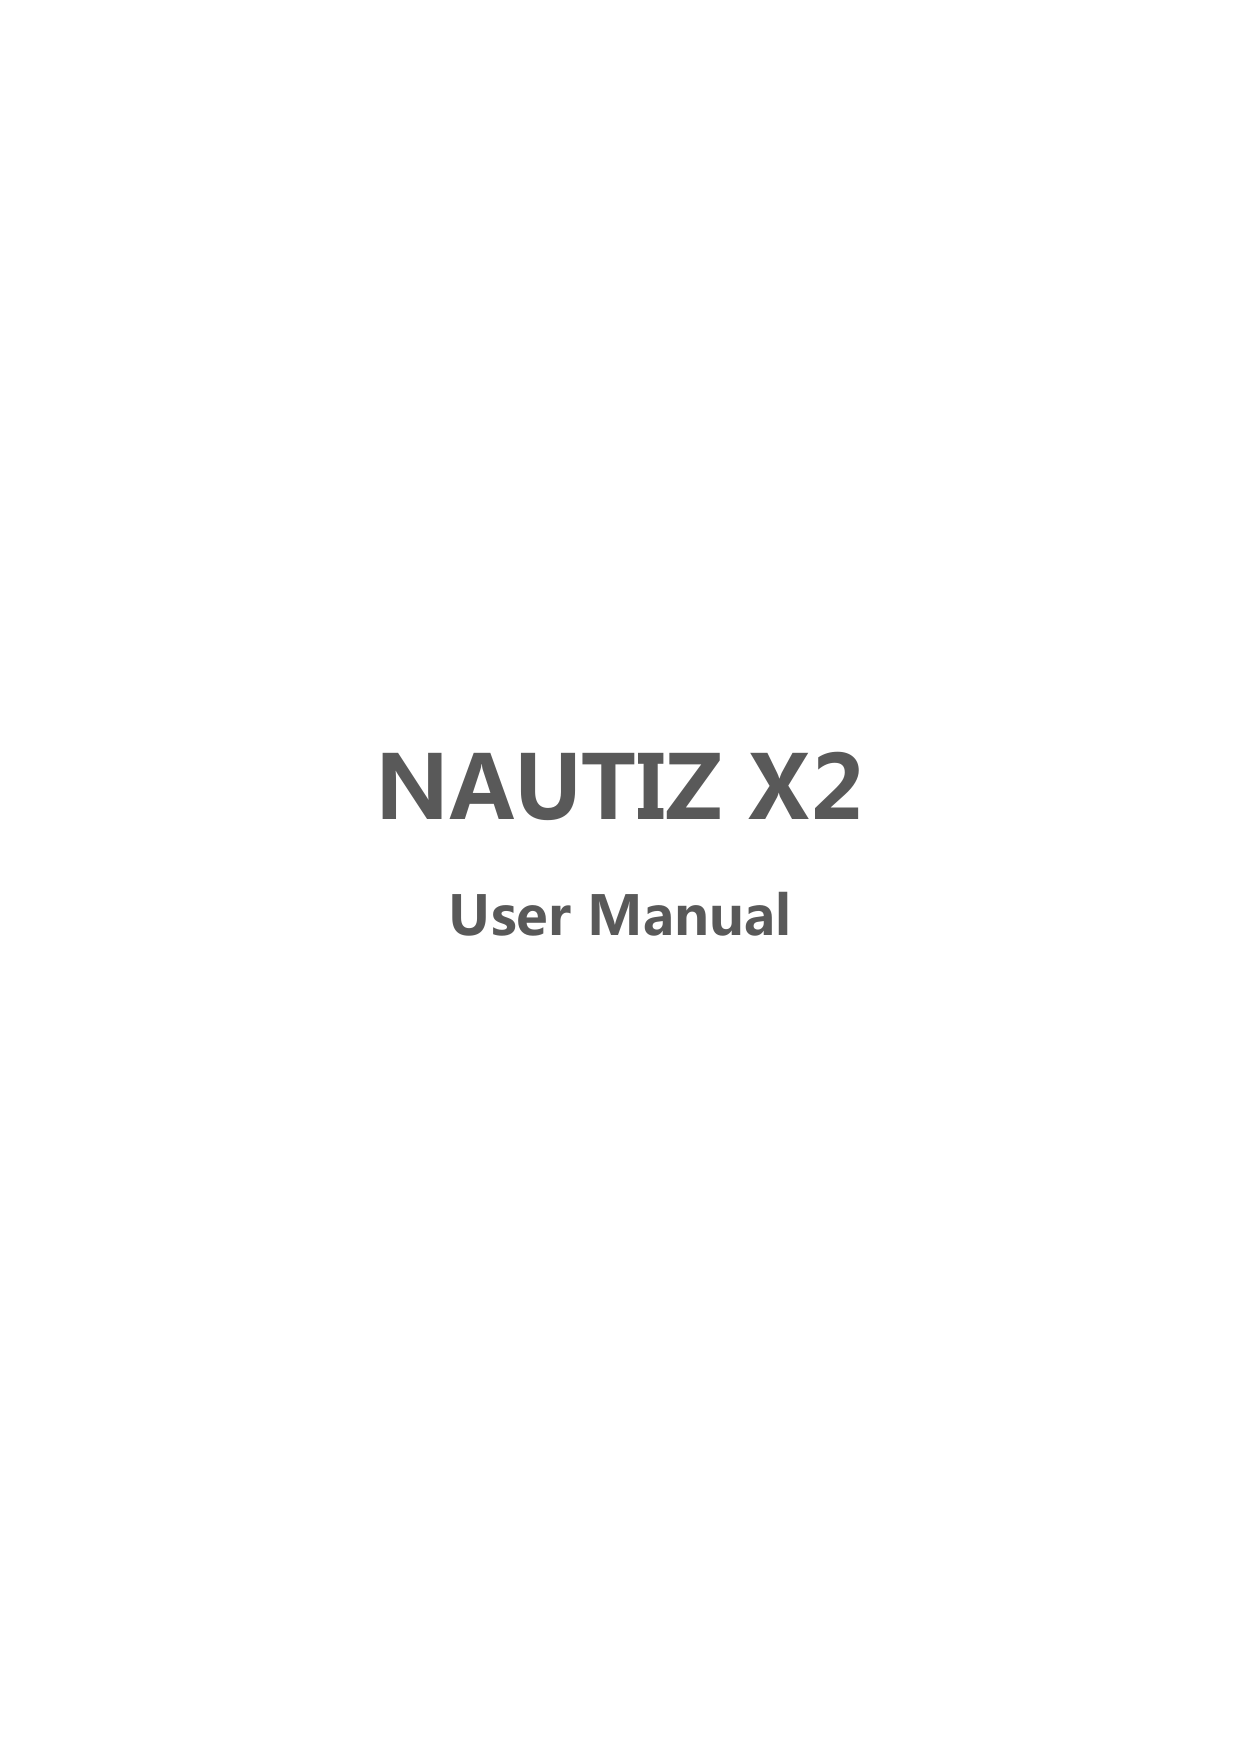  NAUTIZX2UserManual  